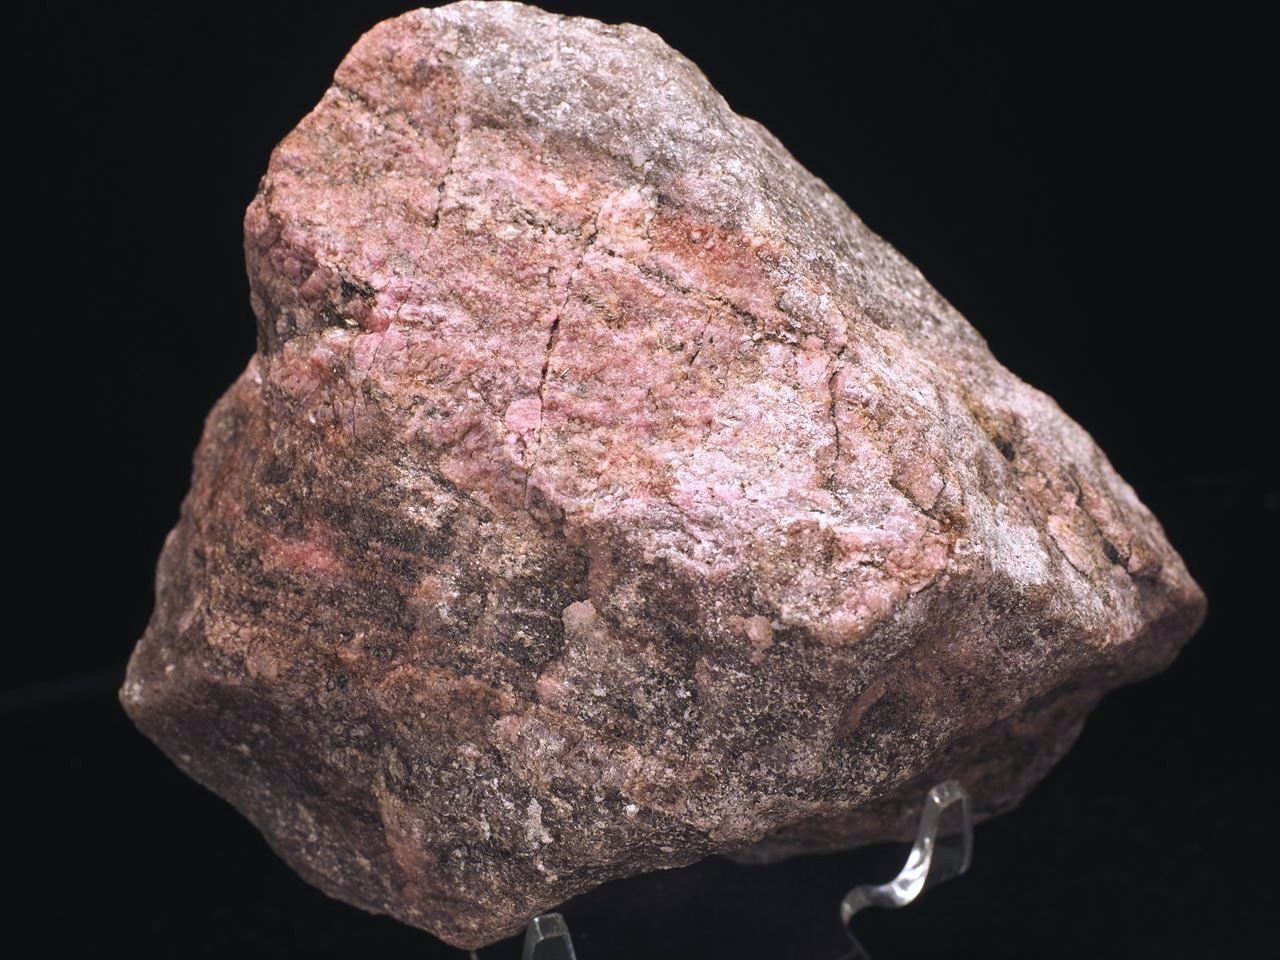 ロードナイト 2.48ct 透明なバラ輝石は貴重 カボションカット ブラジル産 瑞浪鉱物展示館 4145 